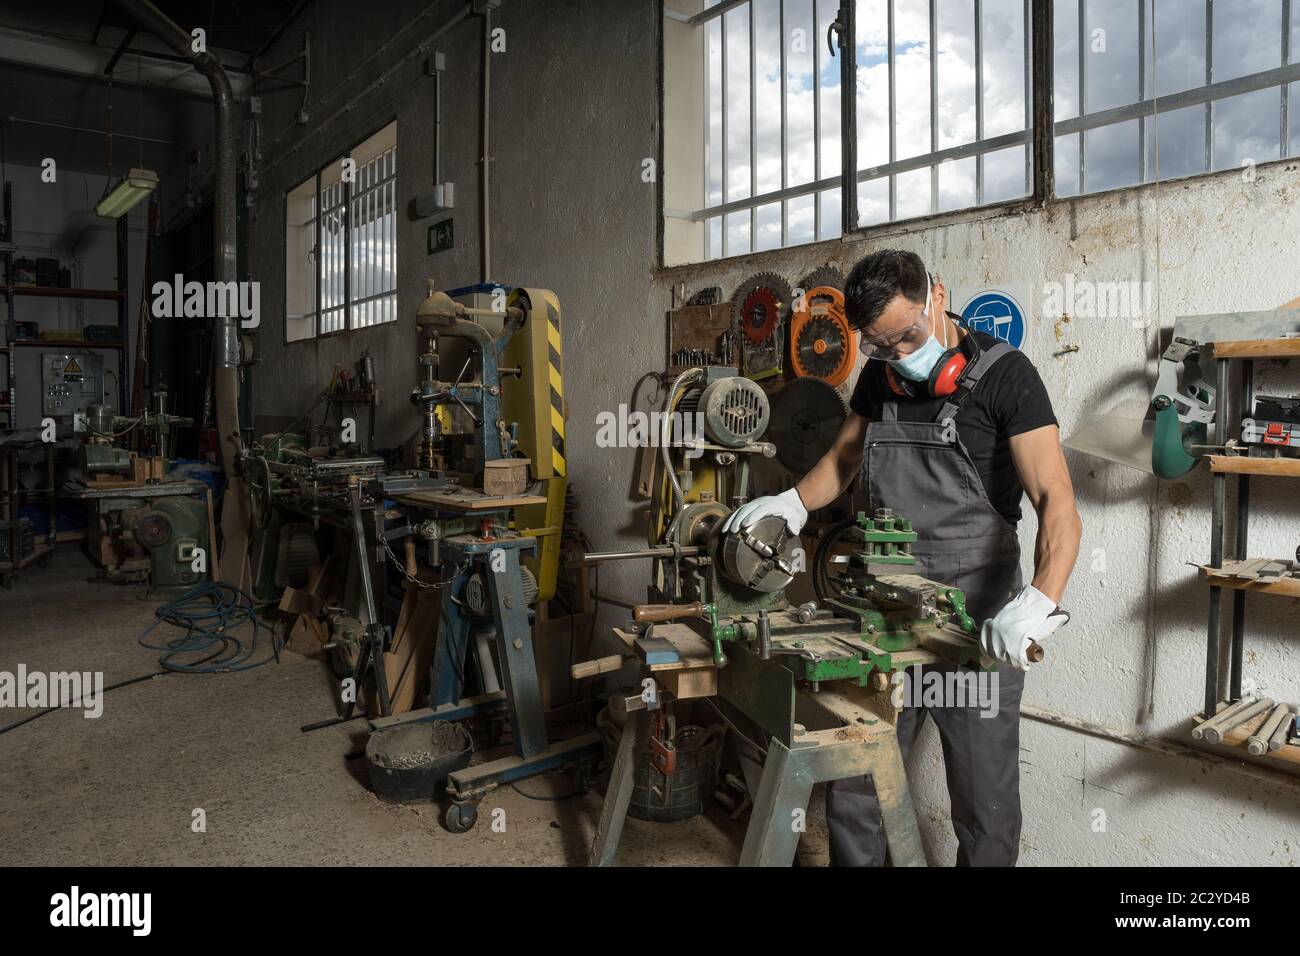 Travailleur debout avec un masque et un équipement de protection dans une usine. Photo intermédiaire. Banque D'Images